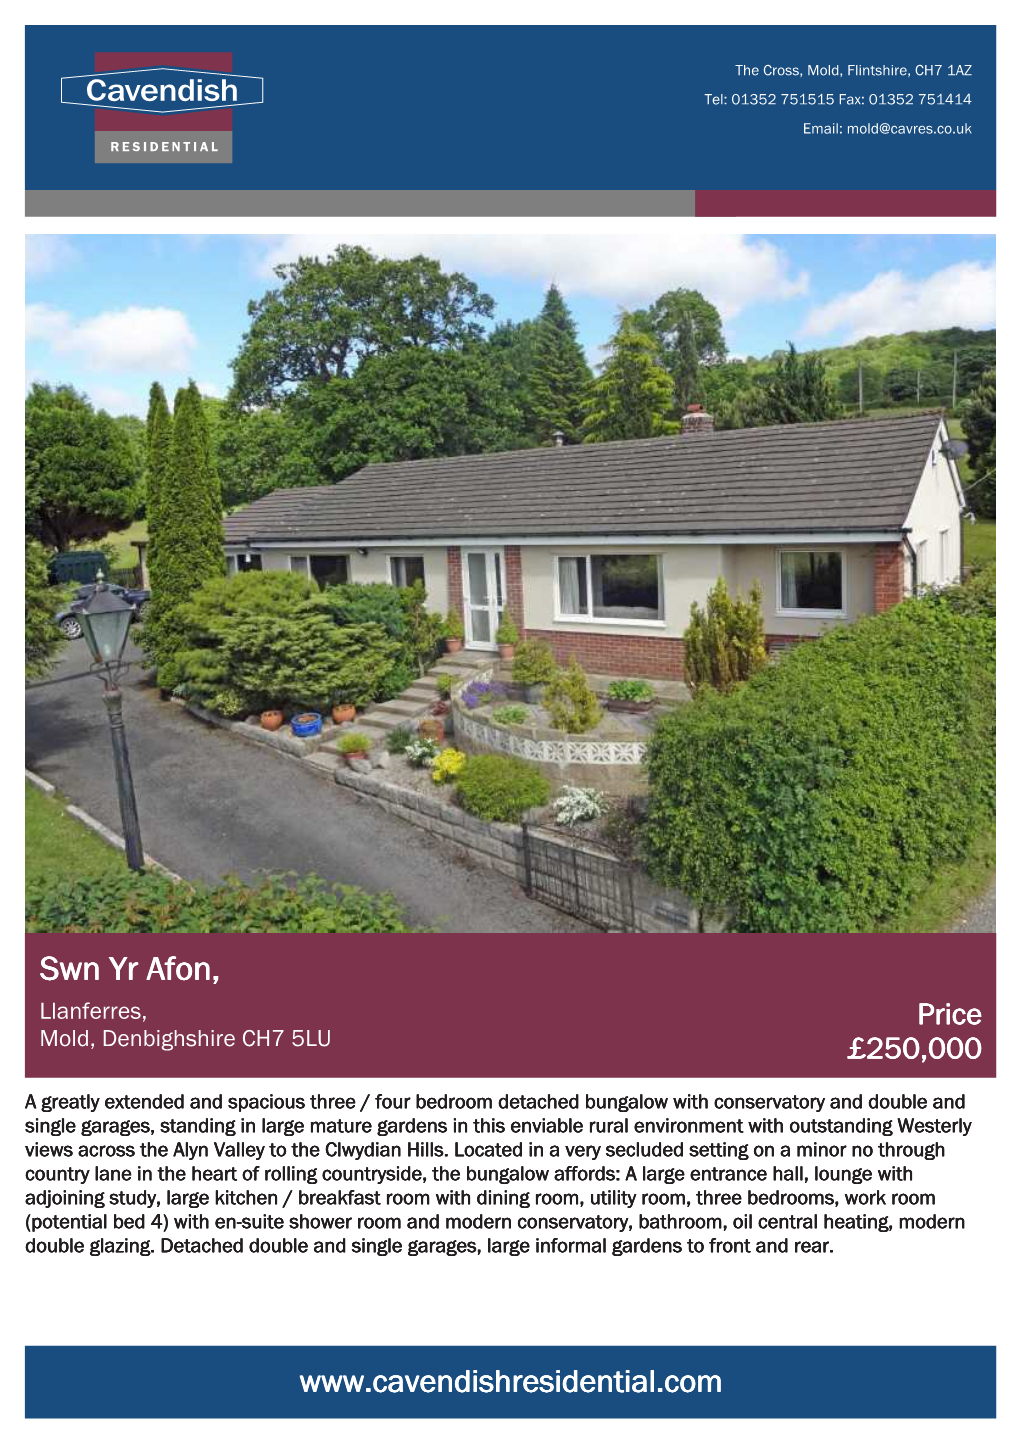 Swn Yr Afon, Llanferres, Price Mold, Denbighshire CH7 5LU £250,000